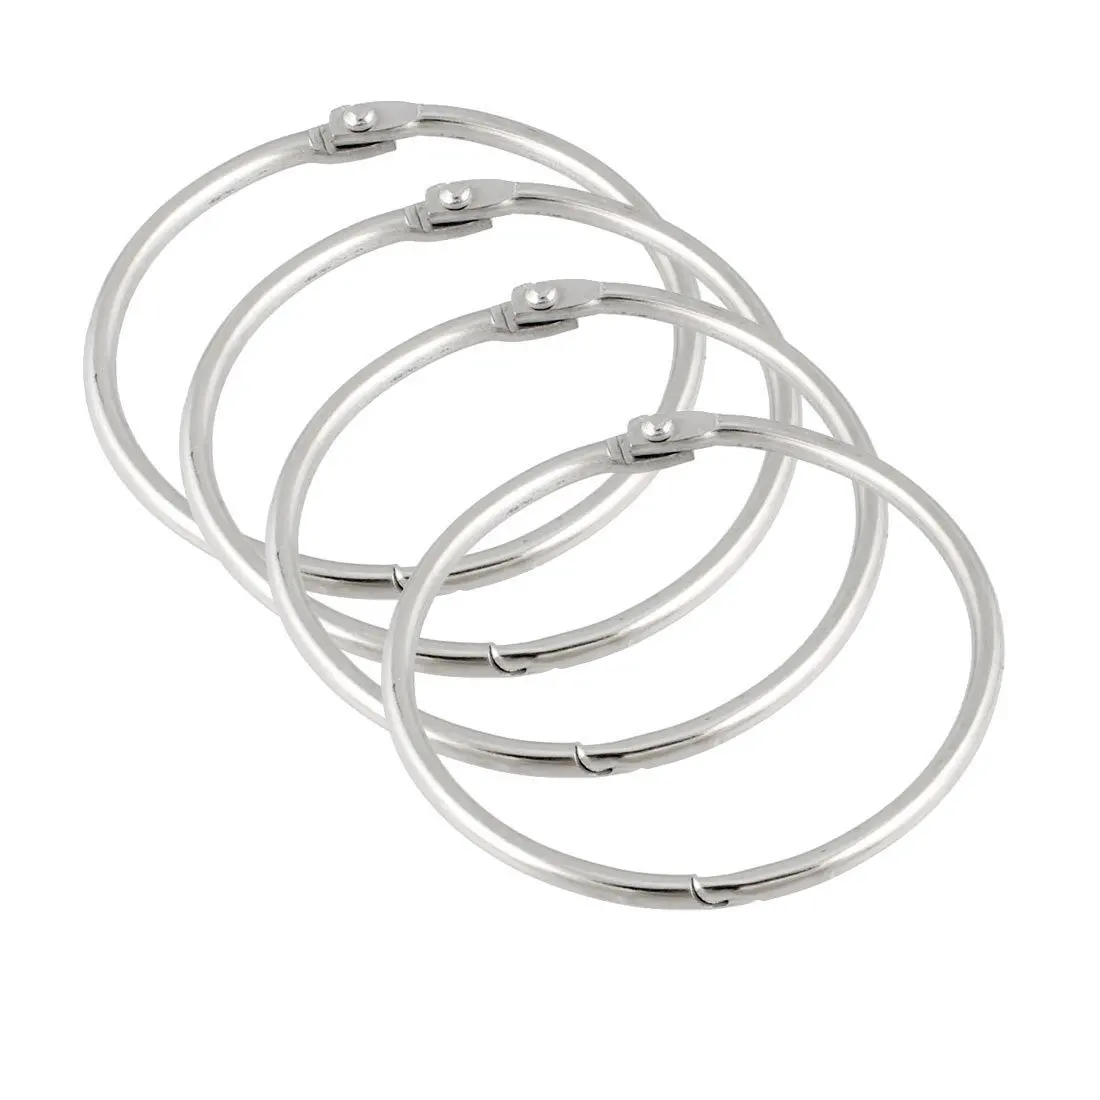 PPYY NEW-свободное раздвижное кольцо 2,2 набор брелок серебро x 4